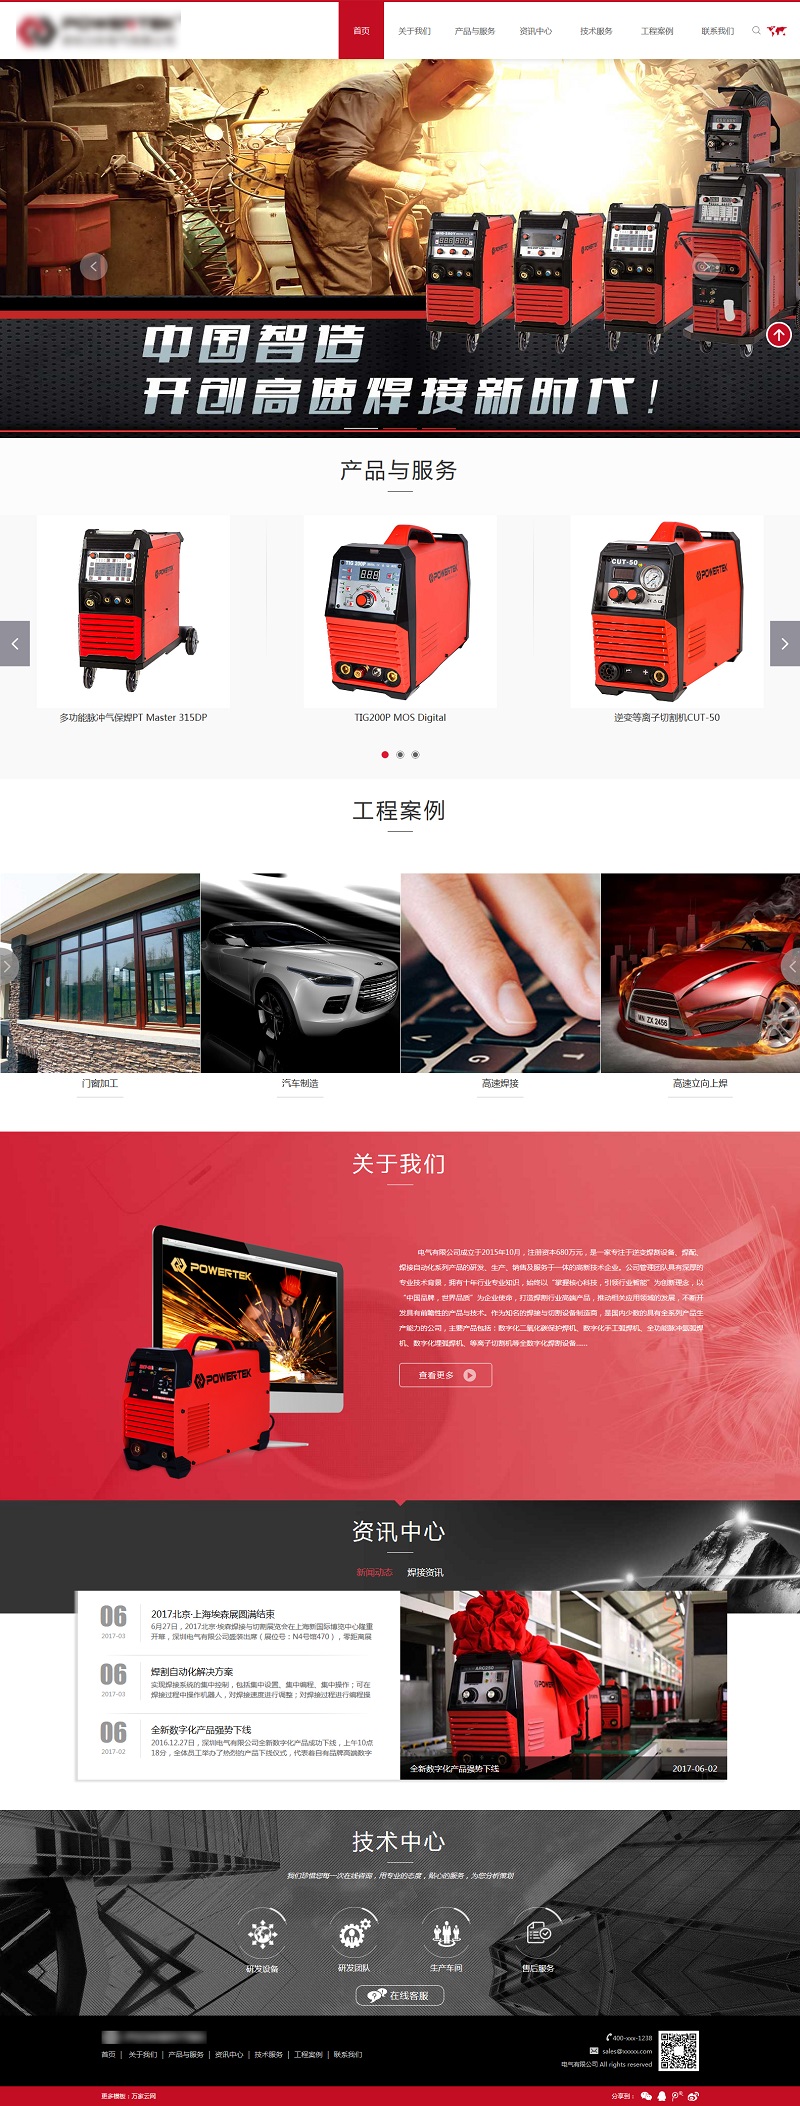 红色电气设备公司HTML5响应式中文网站模板